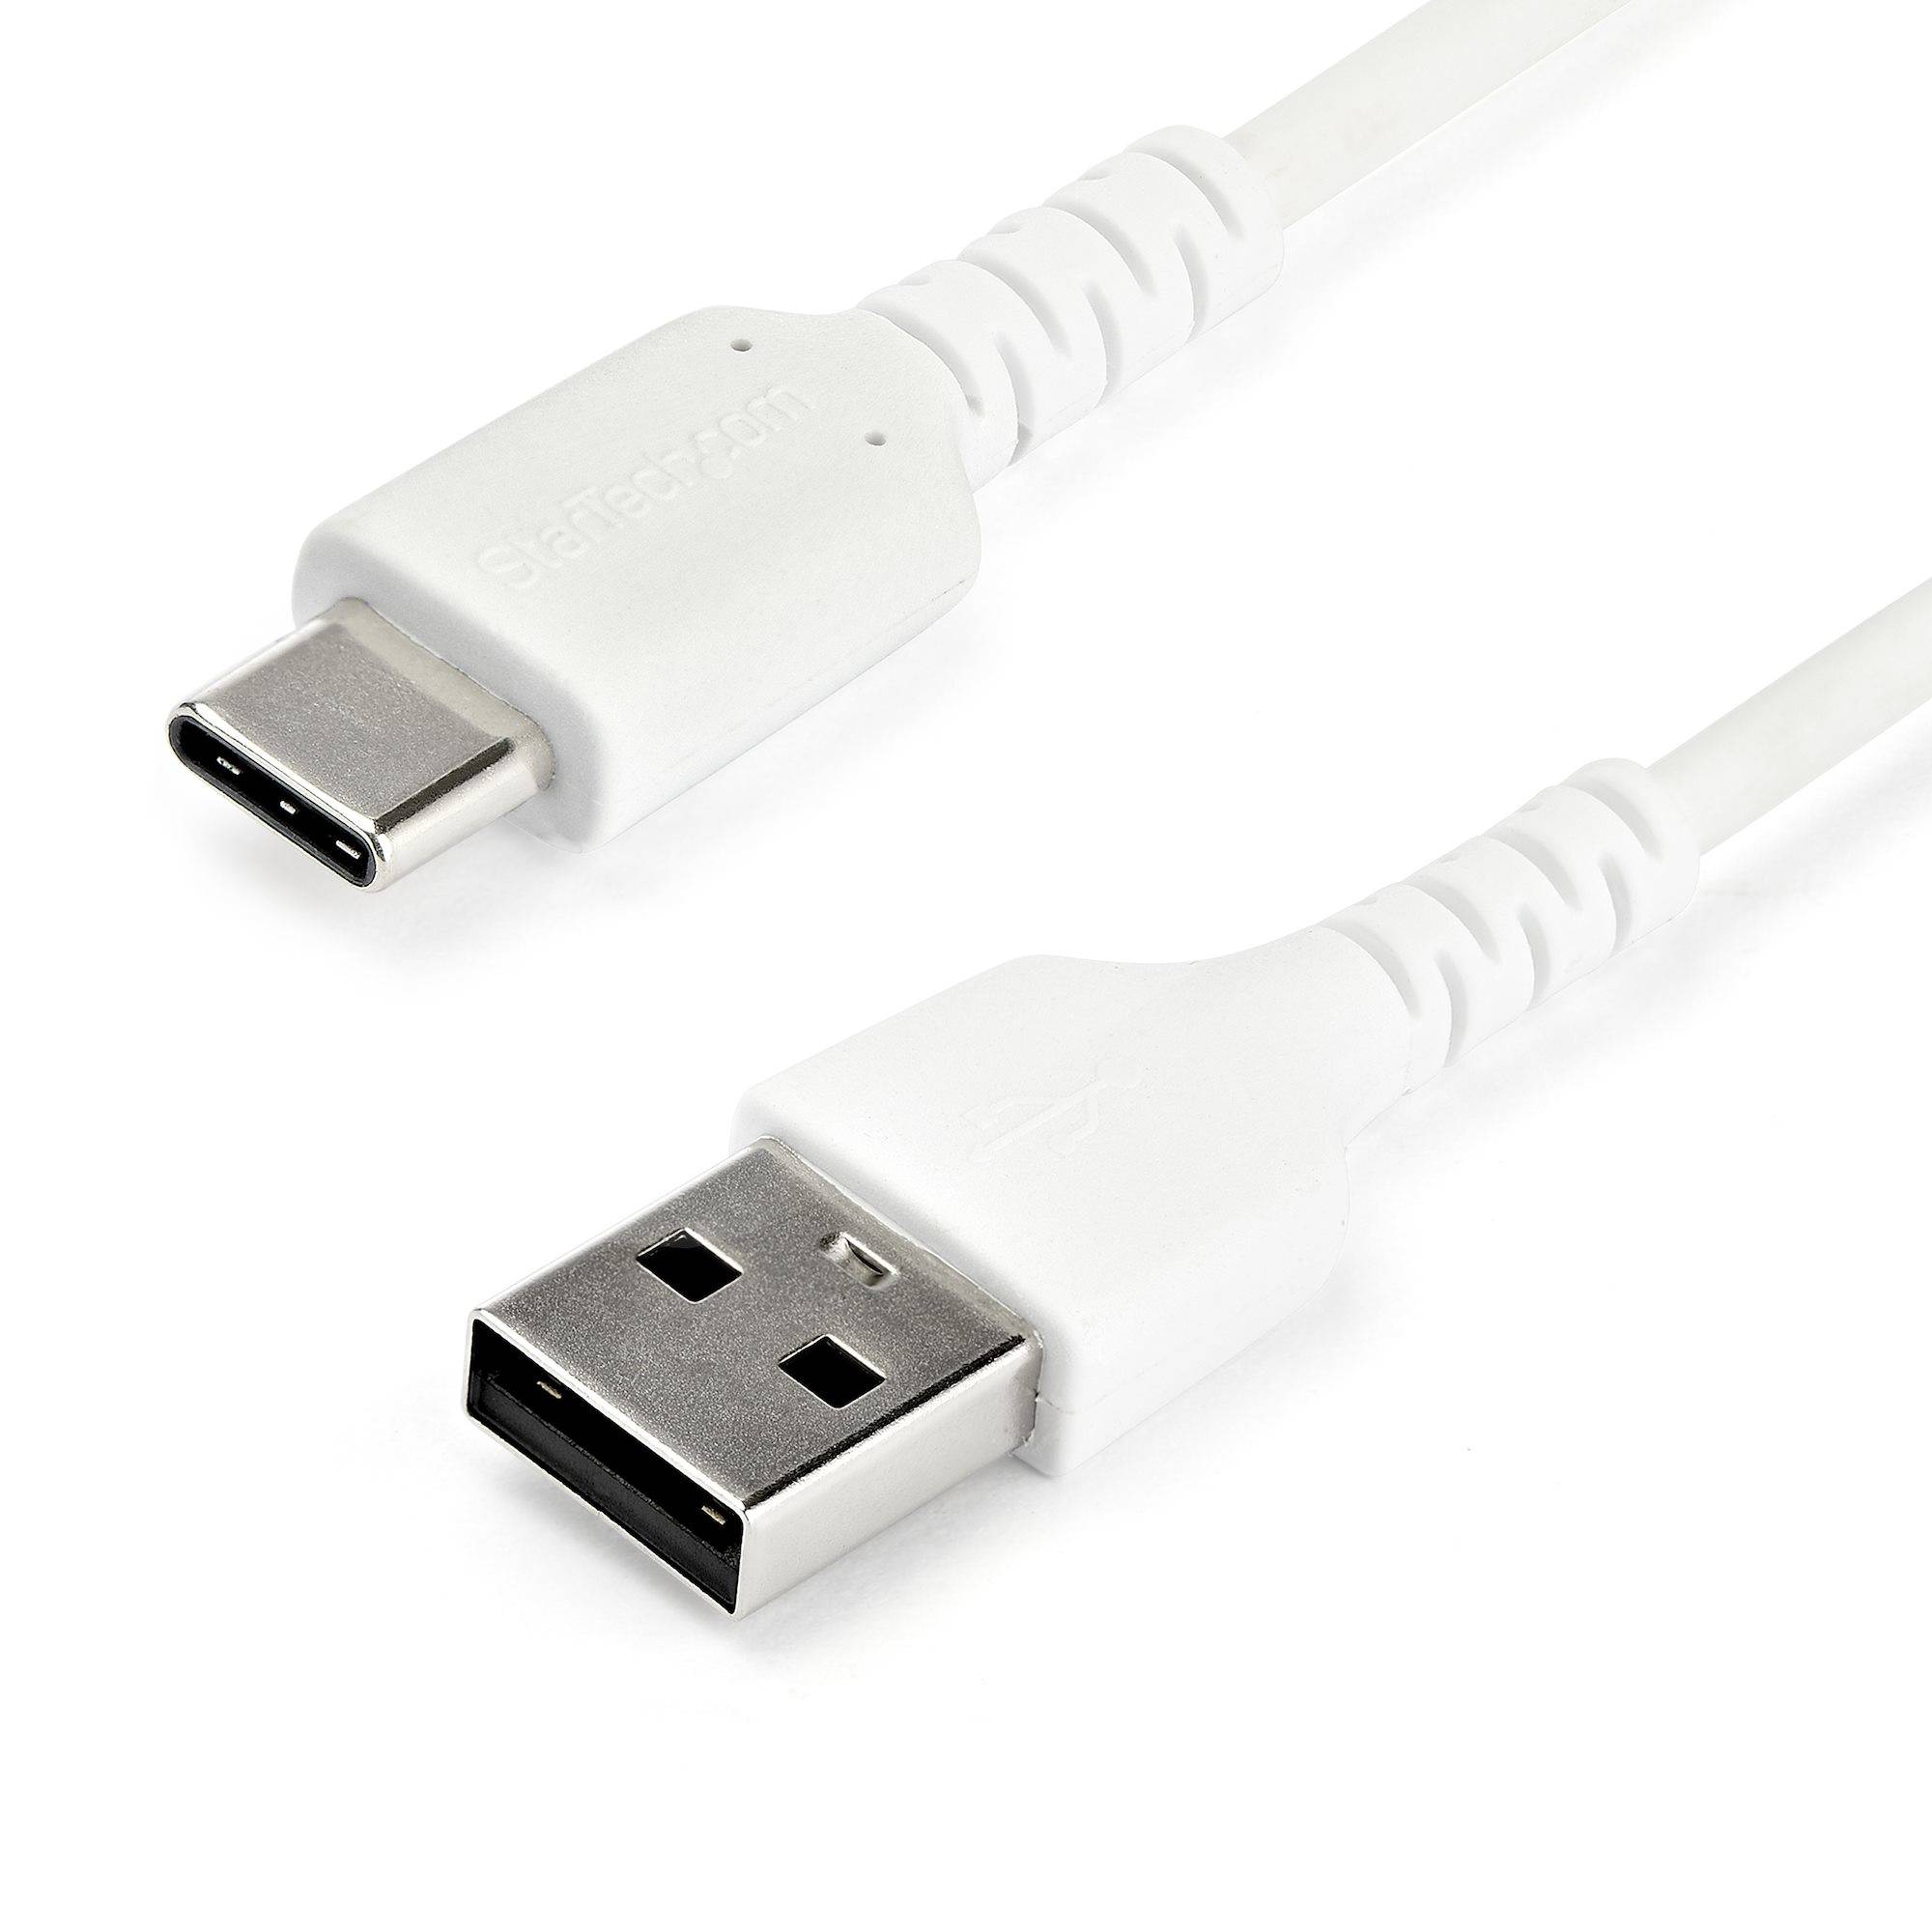 Rca Informatique - Image du produit : 2M DURABLE USB 2.0 TO USB C CABLE WHITE ARAMID FIBER